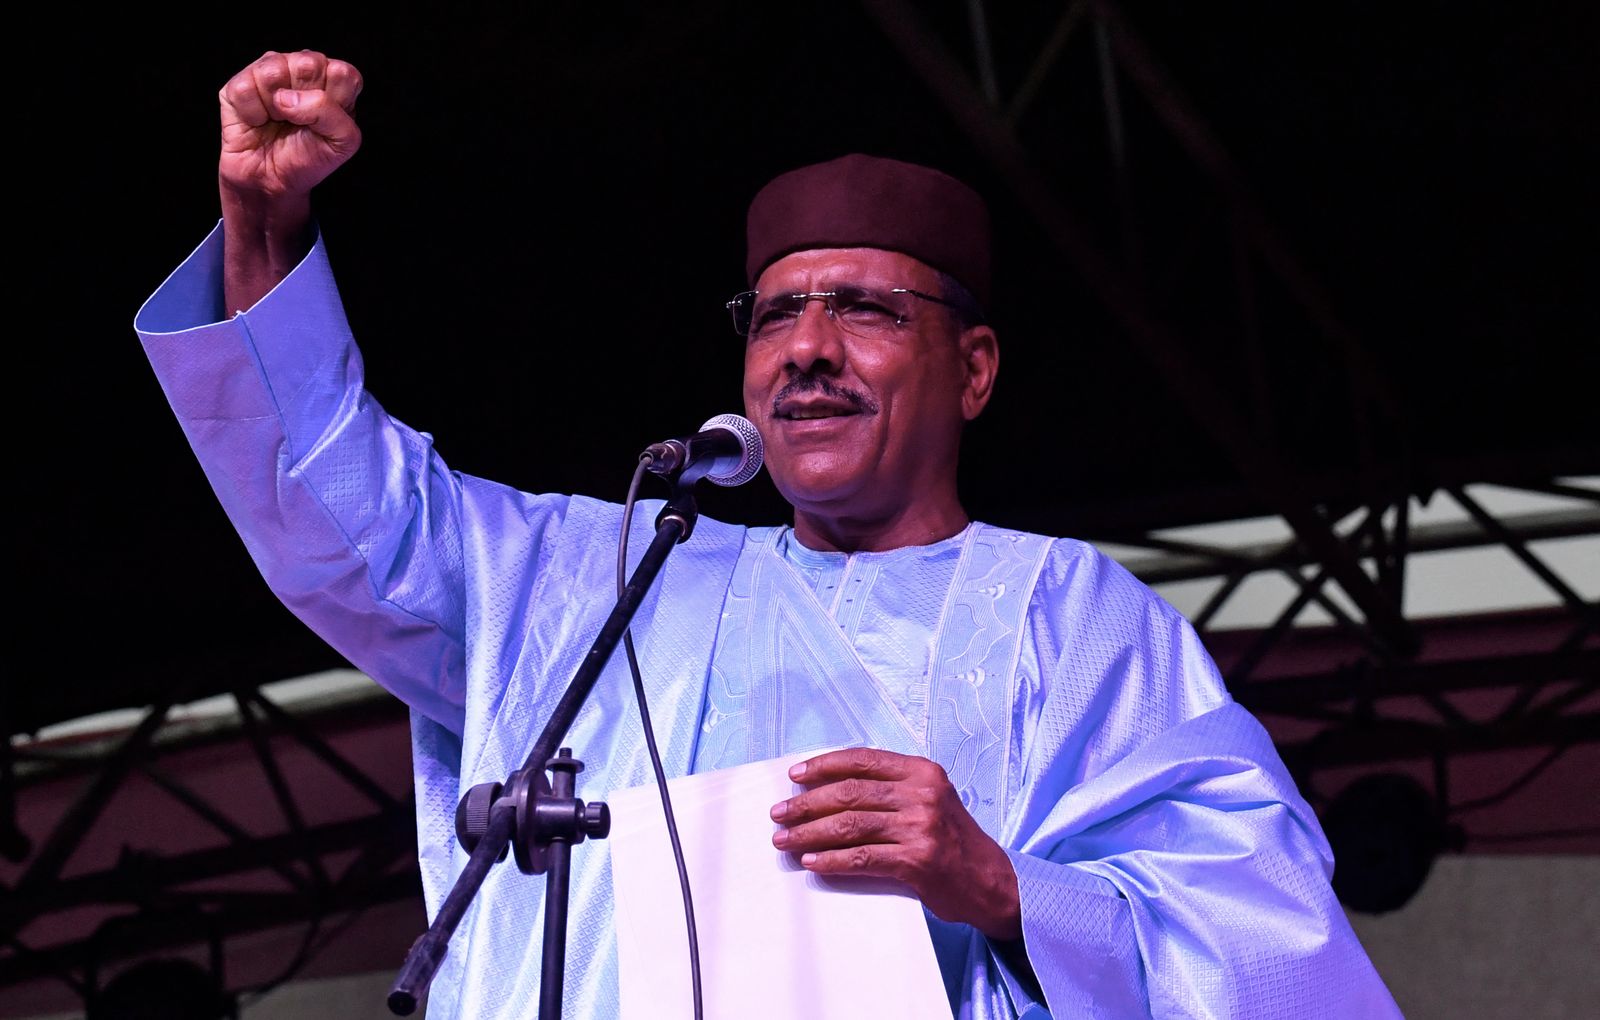 رئيس النيجر المنتخب حديثًا محمد بازوم يلقي خطابًا في مقر حزبه بعد الإعلان عن انتخابه في نيامي. - AFP